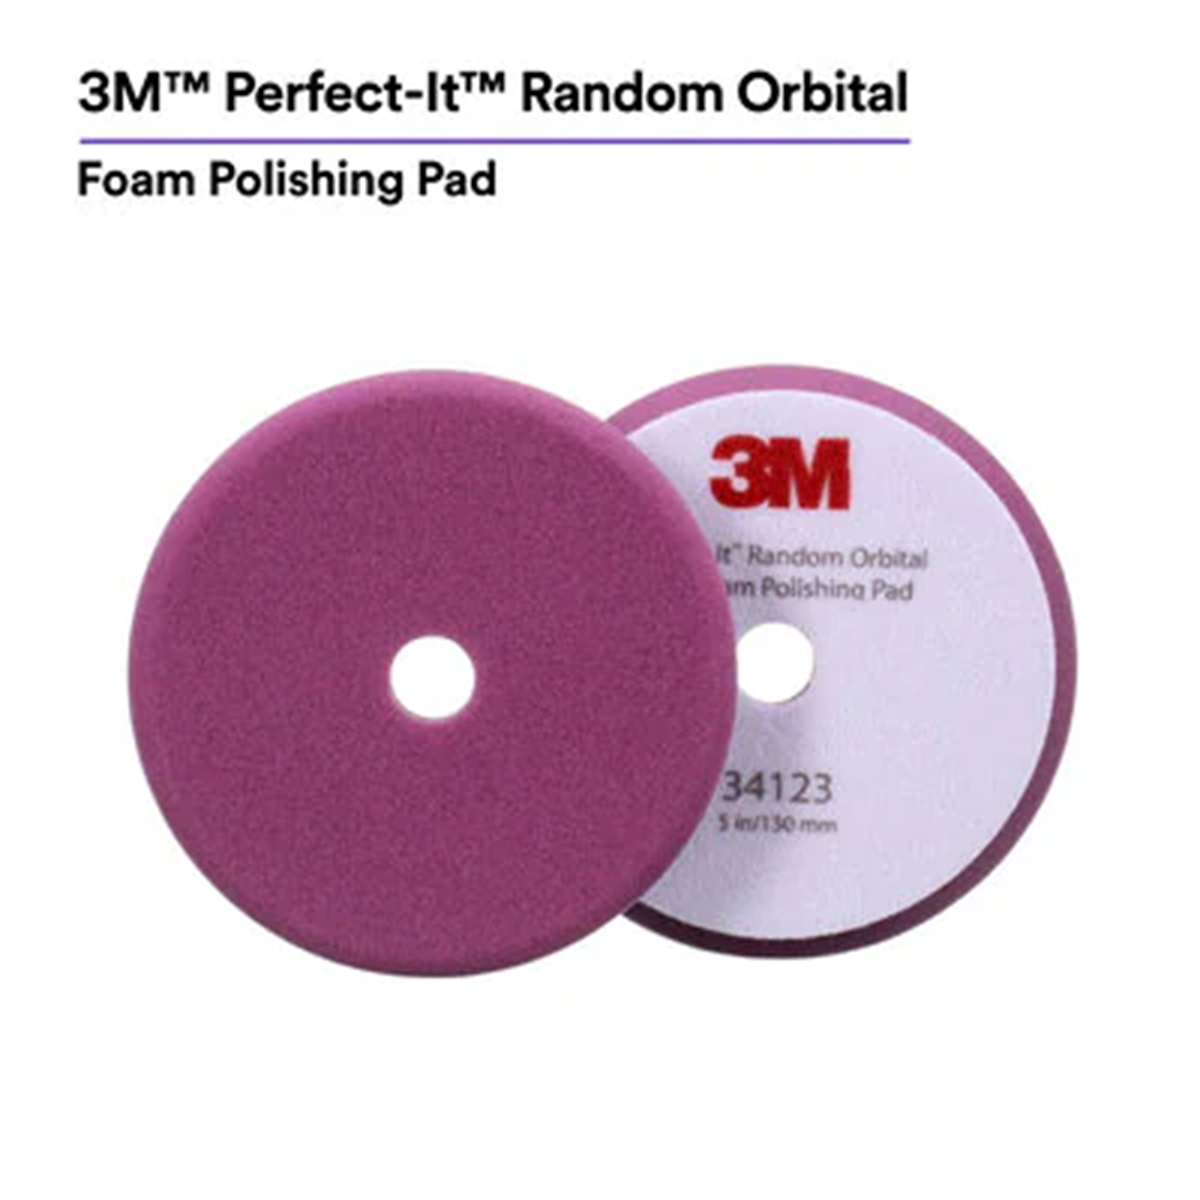 Picture of 3M MMM34123 5 in. Perfect-It Random Orbital Foam Polishing Pad, Purple - 2 Pads per Bag